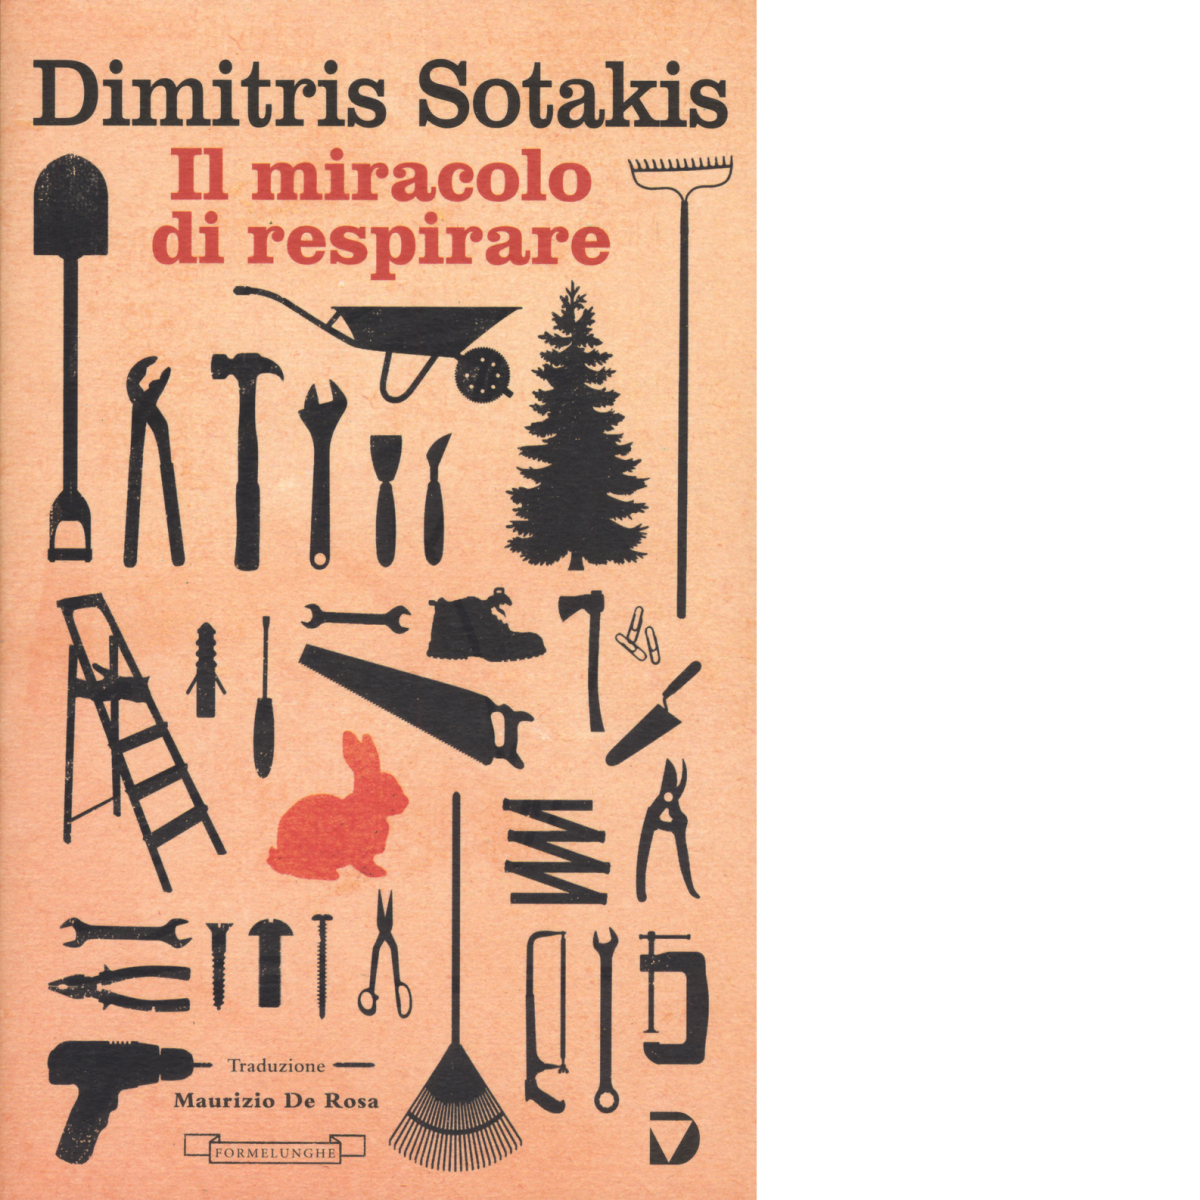 Il miracolo di respirare di Dimitris Sotakis - Del Vecchio editore,2019